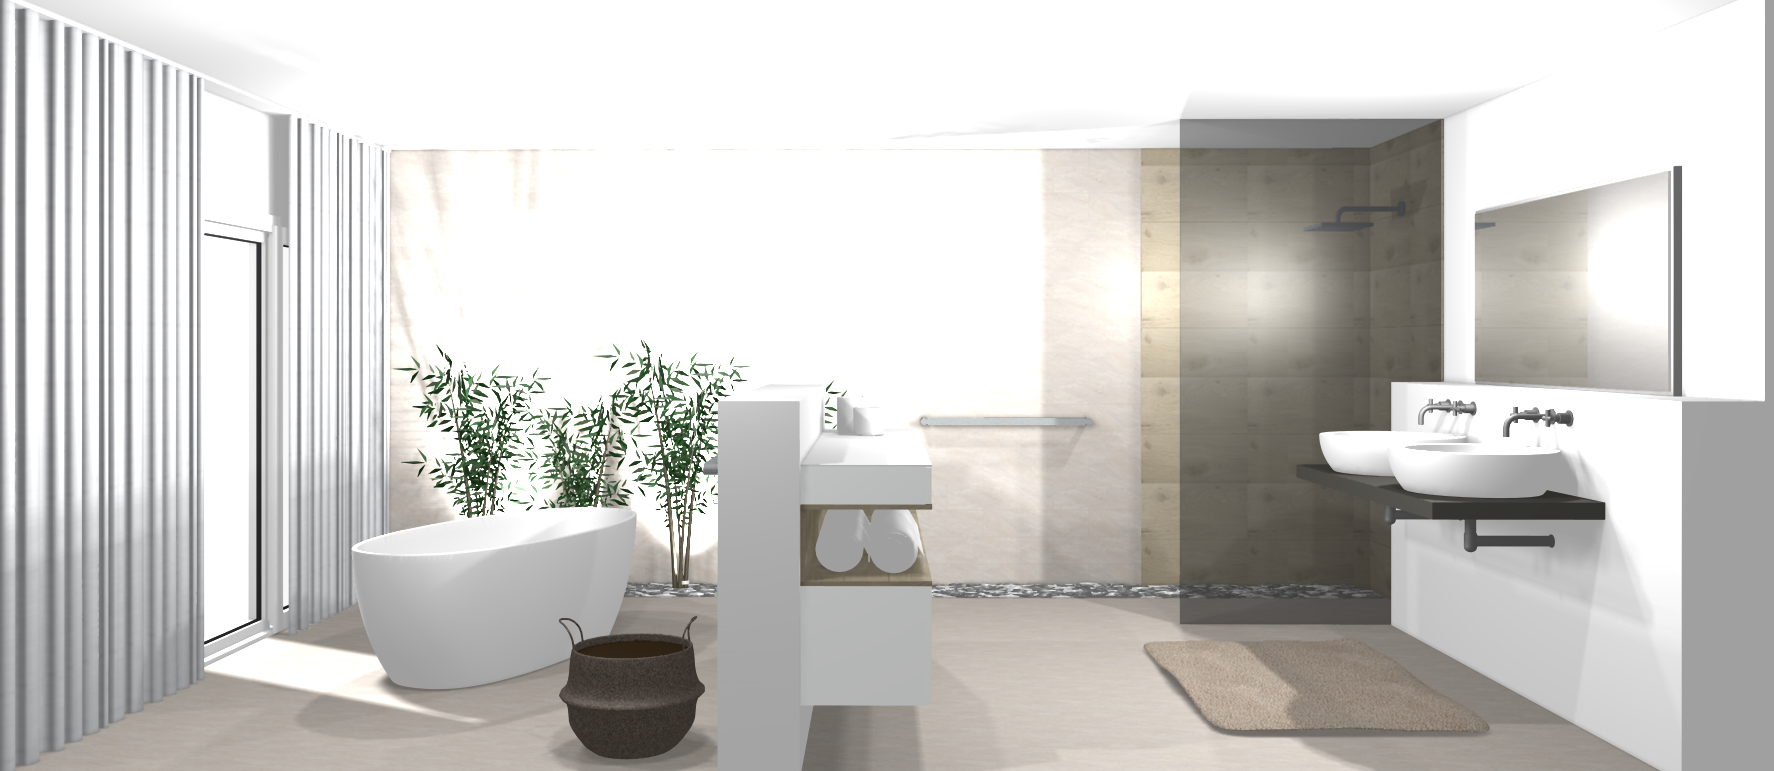 Modernes Badezimmer mit freistehender Badewanne #badezimmer #dusche #freistehendebadewanne ©www.wohnly.com